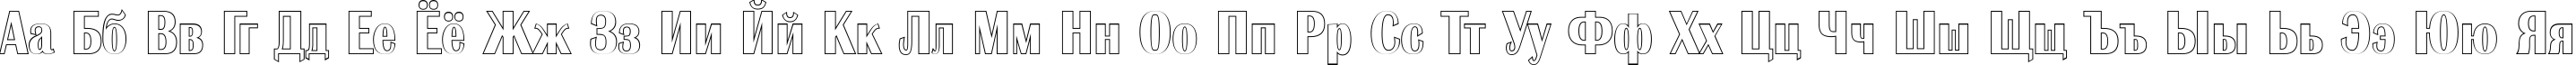 Пример написания русского алфавита шрифтом a_AlbionicNrOtl